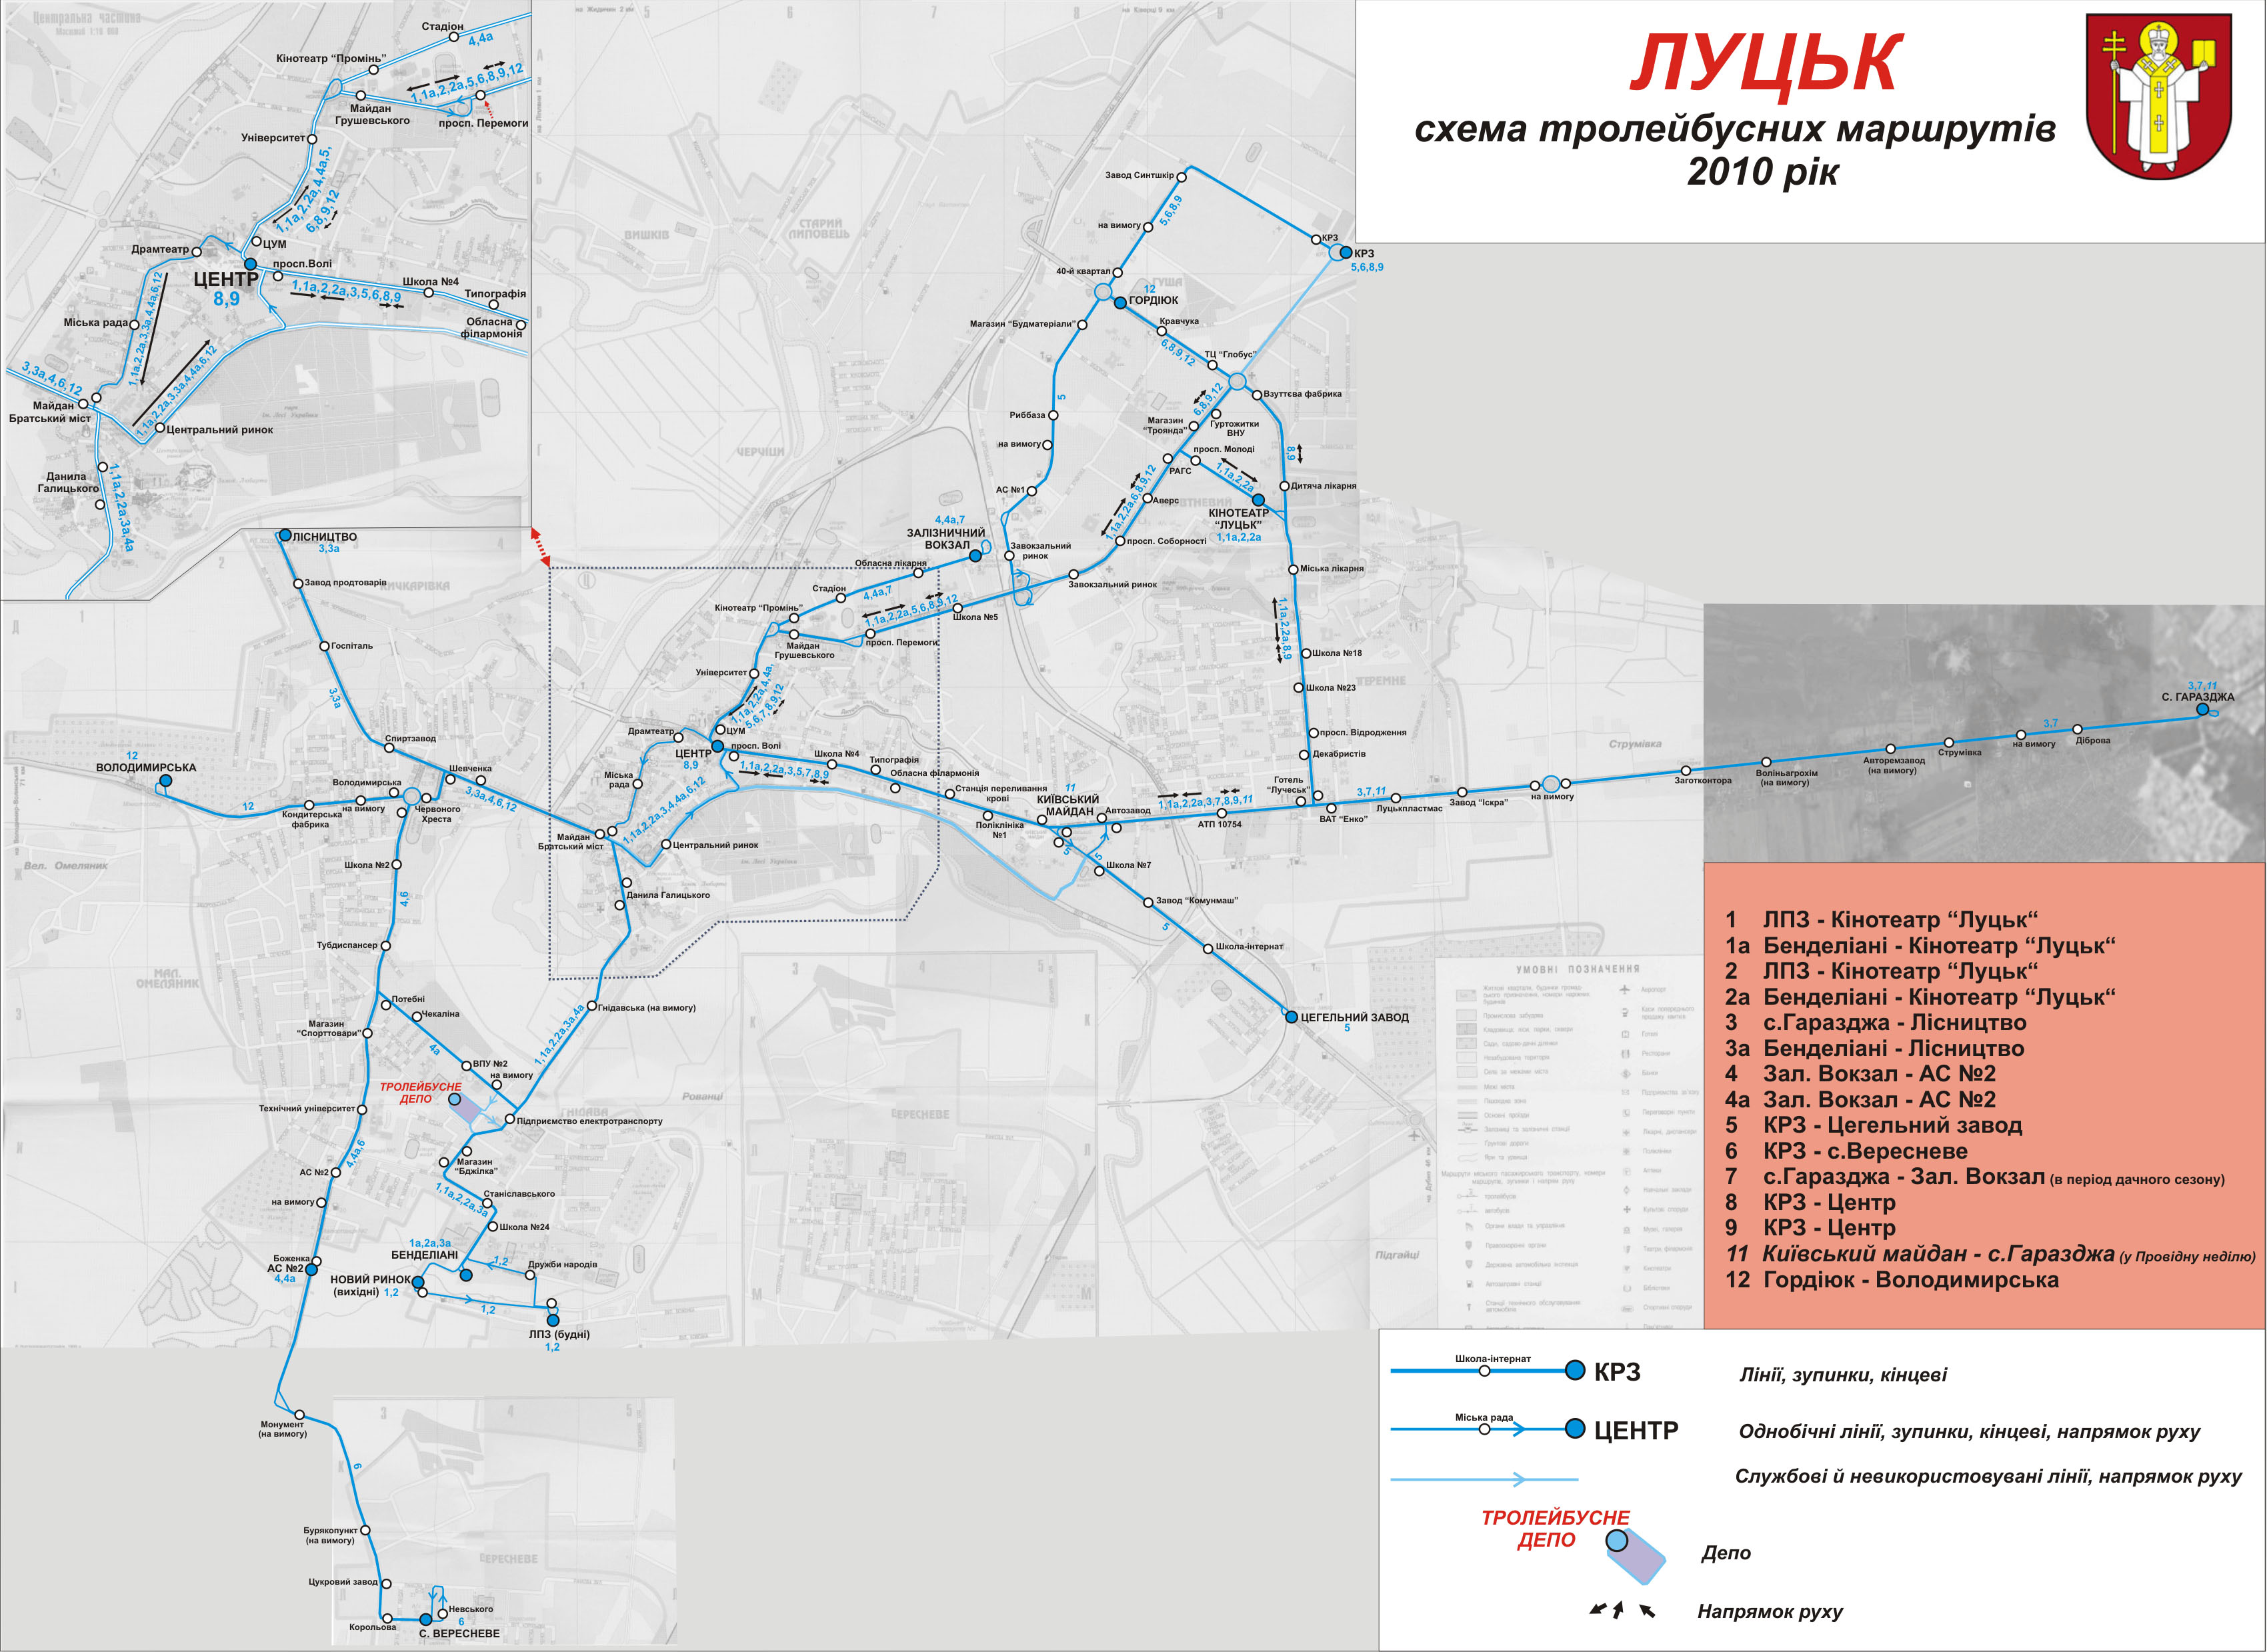 Luzk — Maps